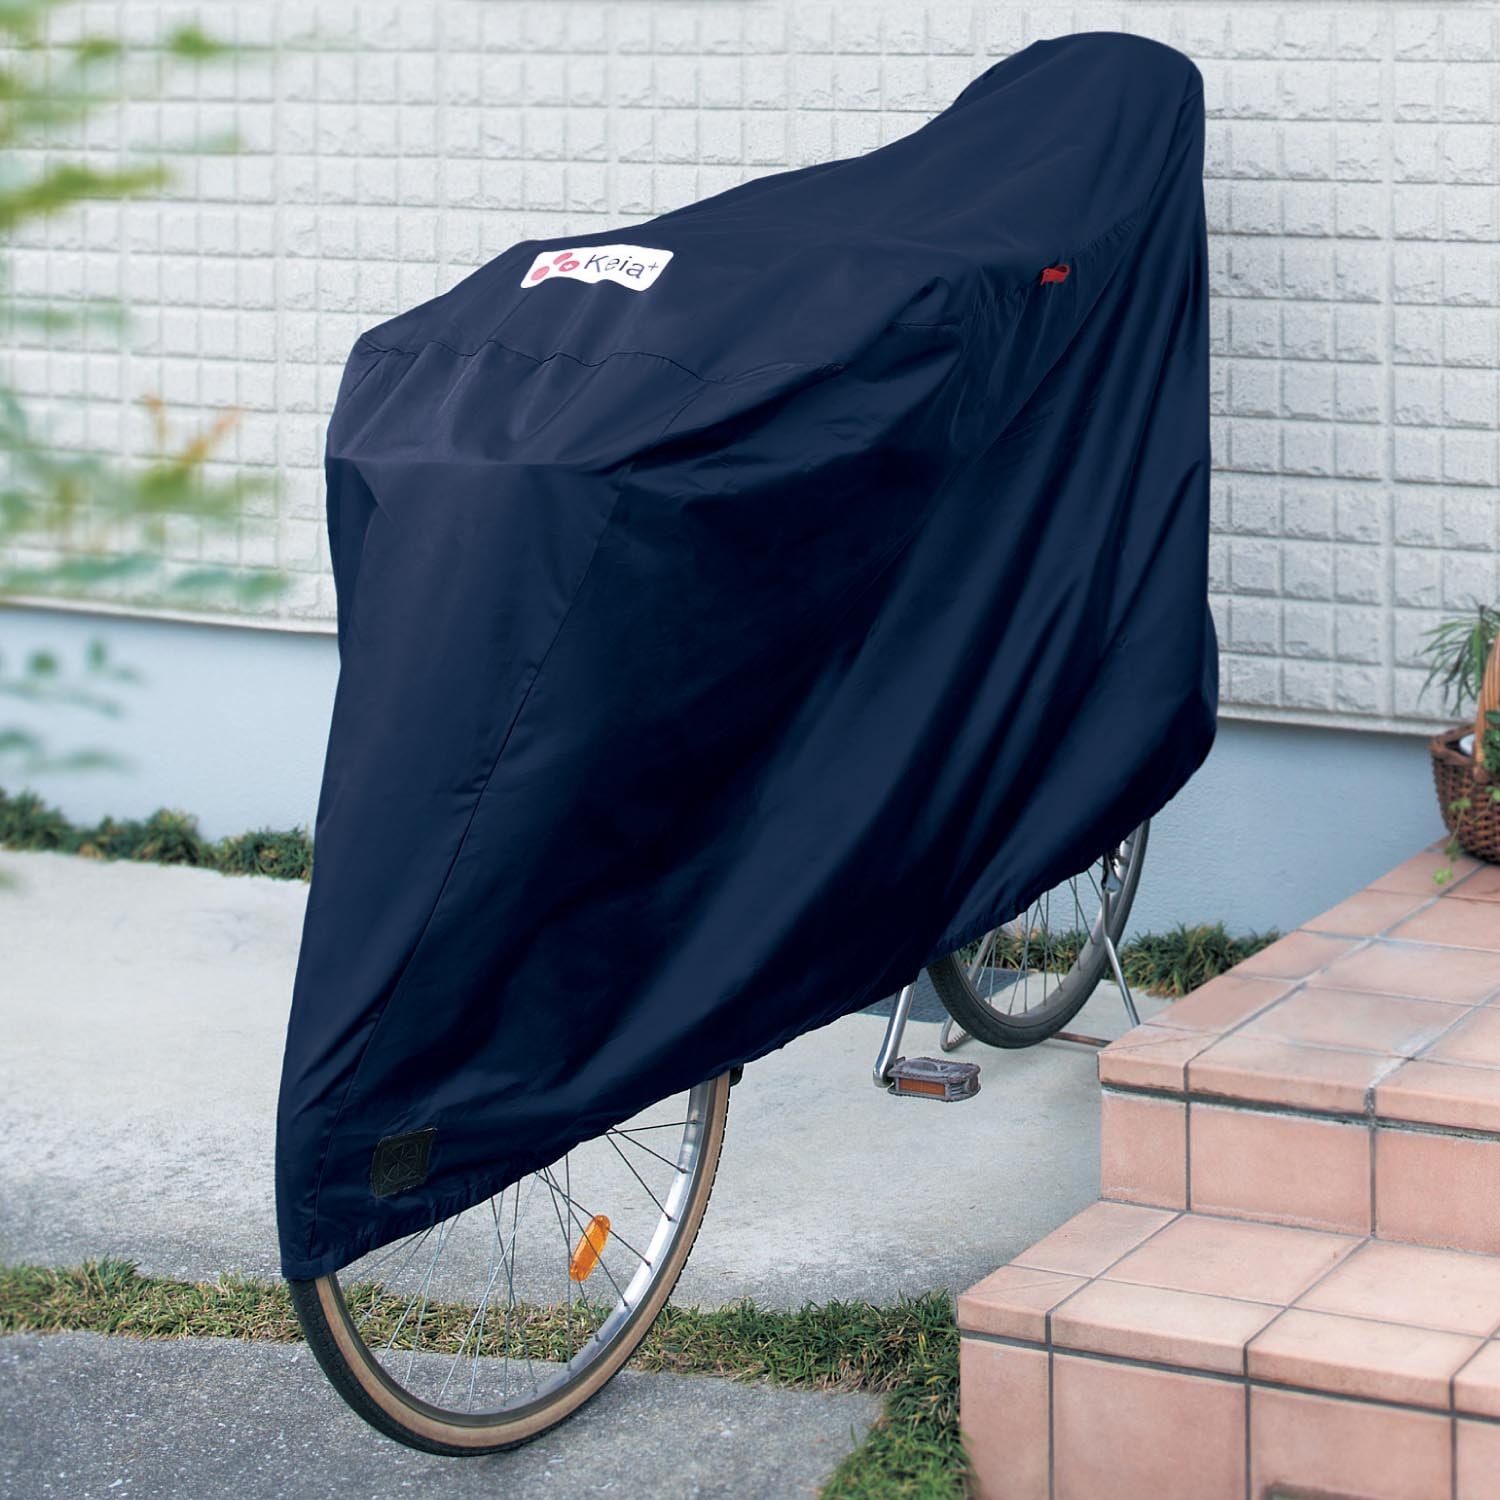 風飛び防止用ベルト付き自転車カバーの画像